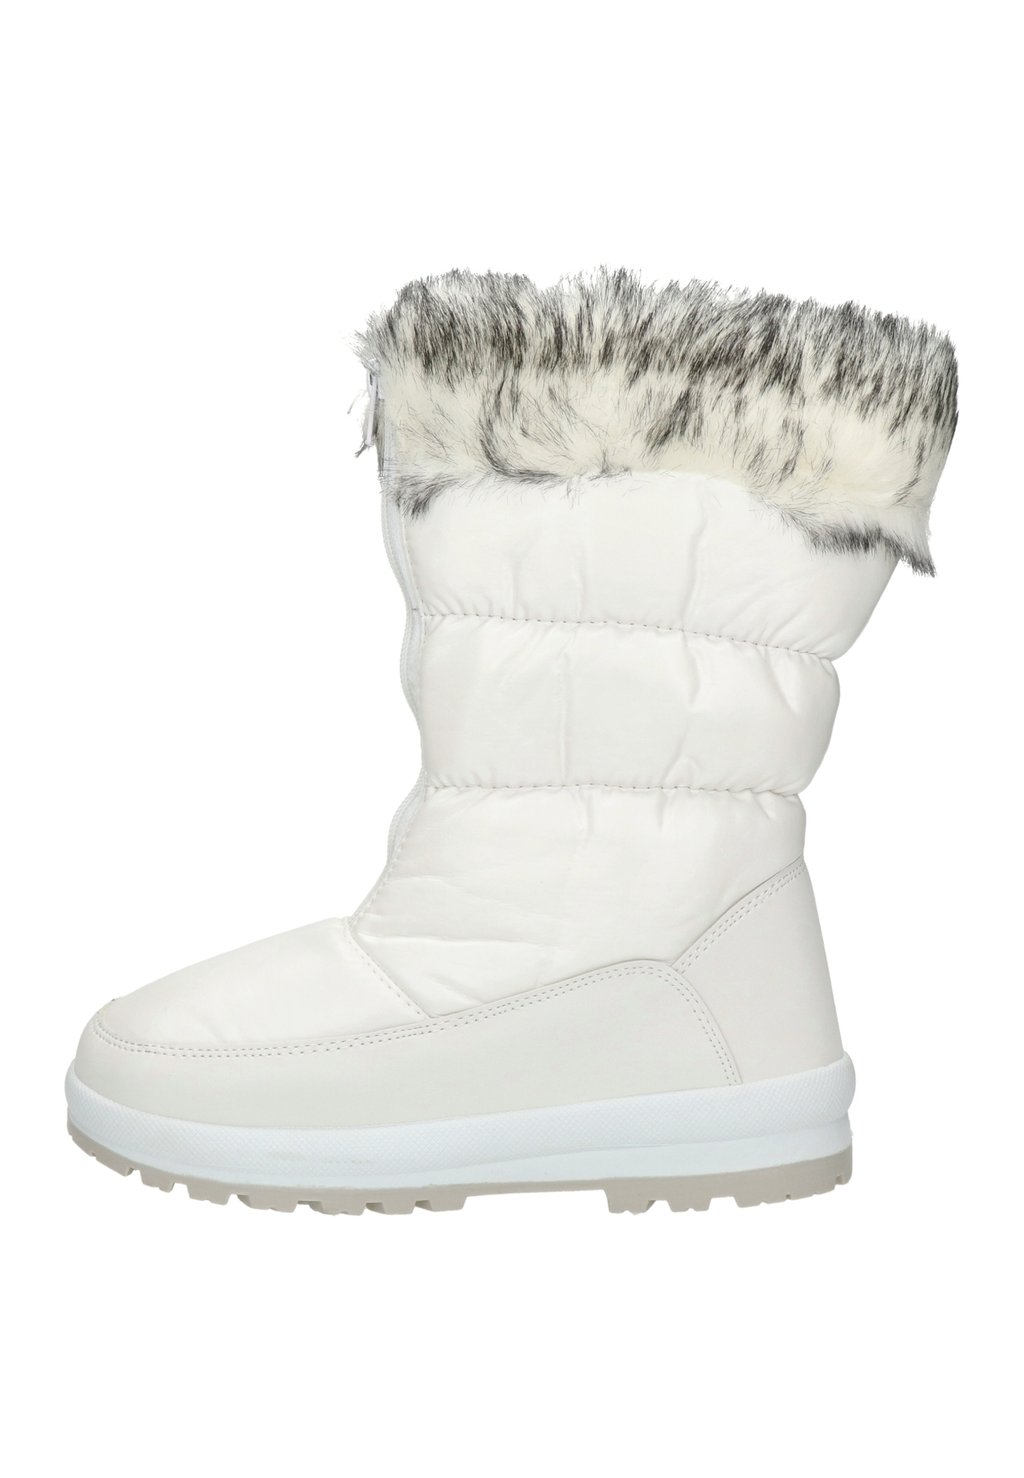 Зимние ботинки SNOW FUN Nelson, цвет wit